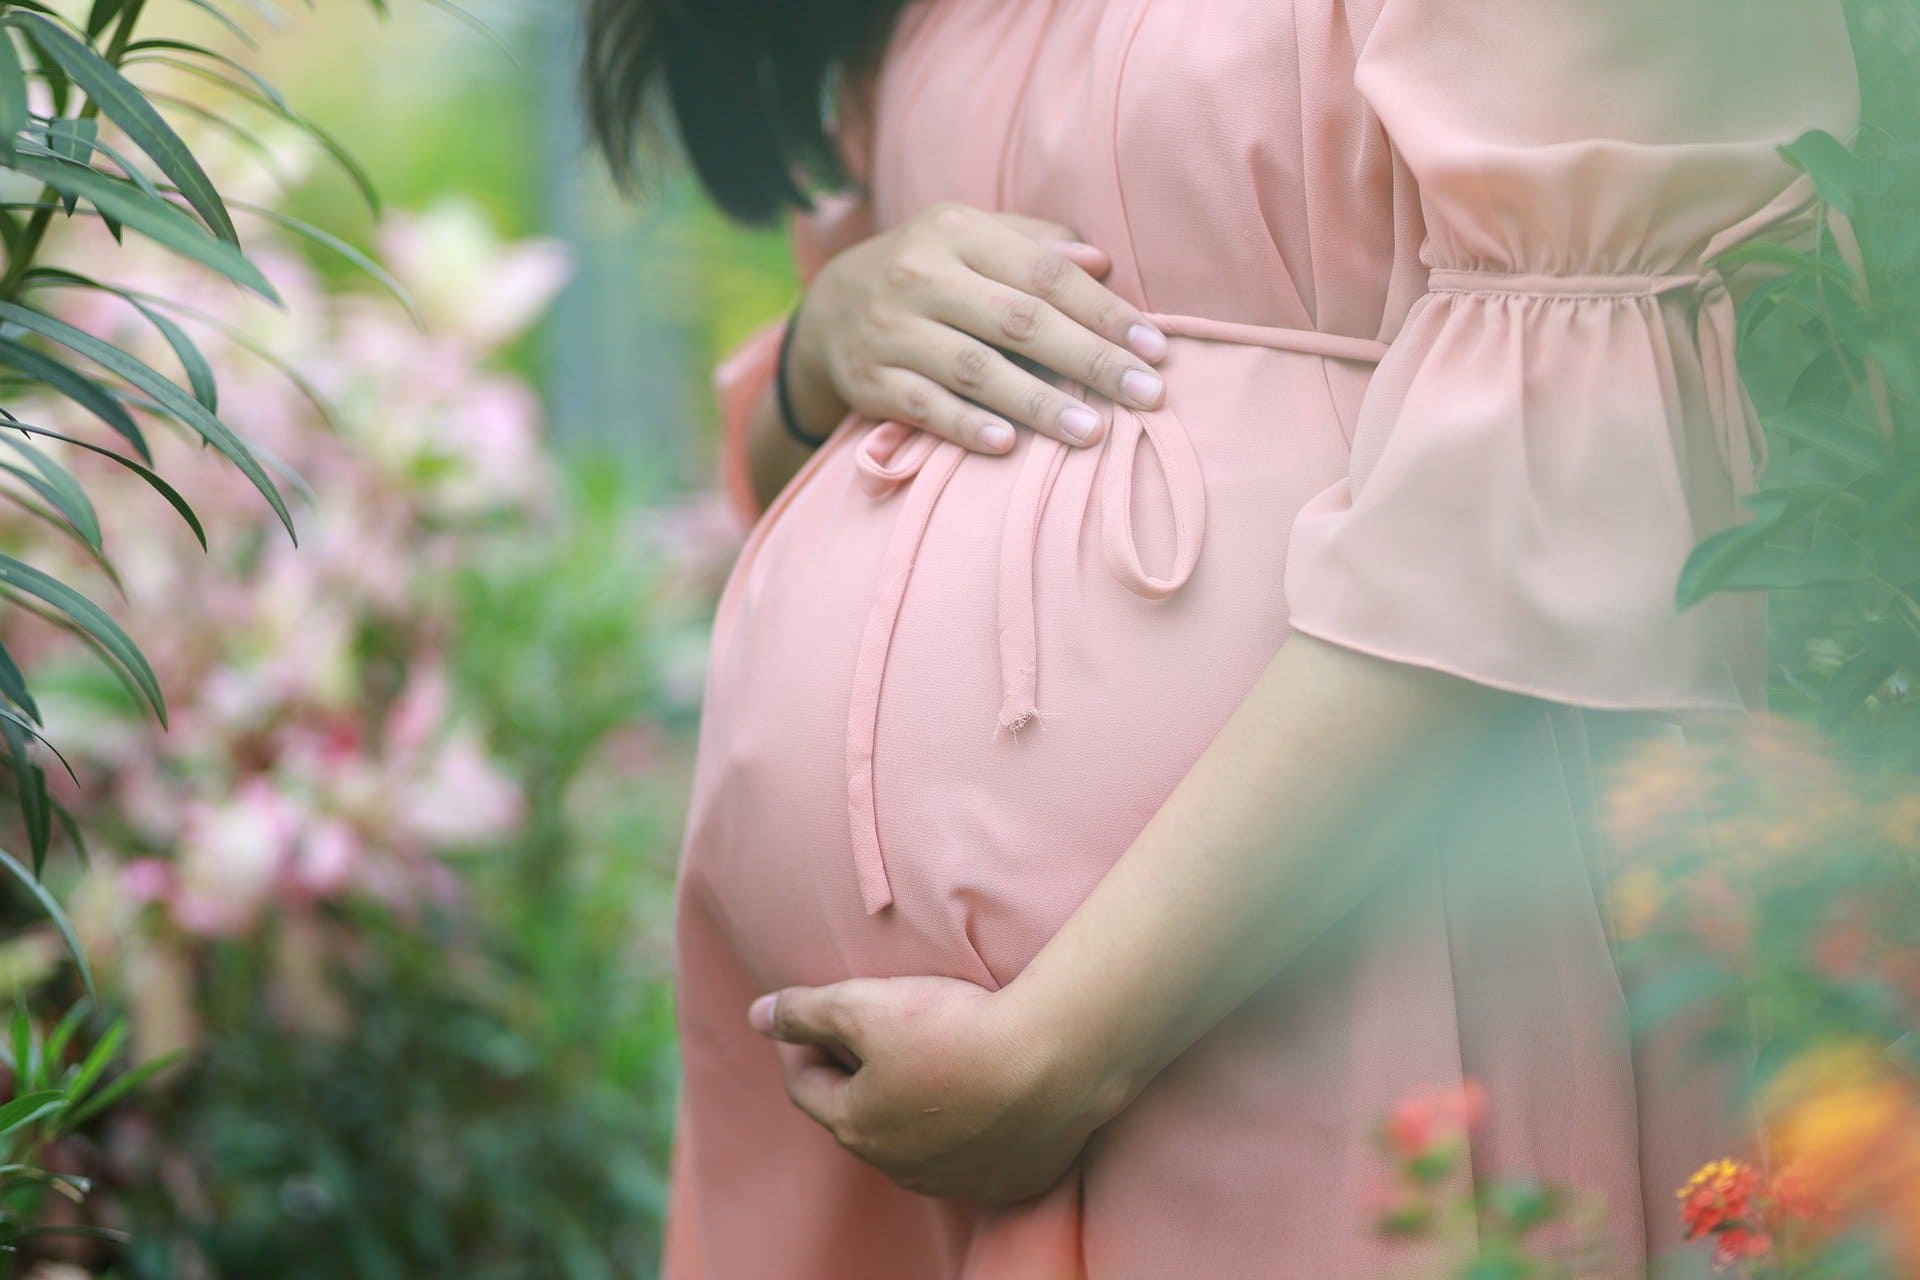  نصائح هامة للحامل  اثناء الحمل في الطفل